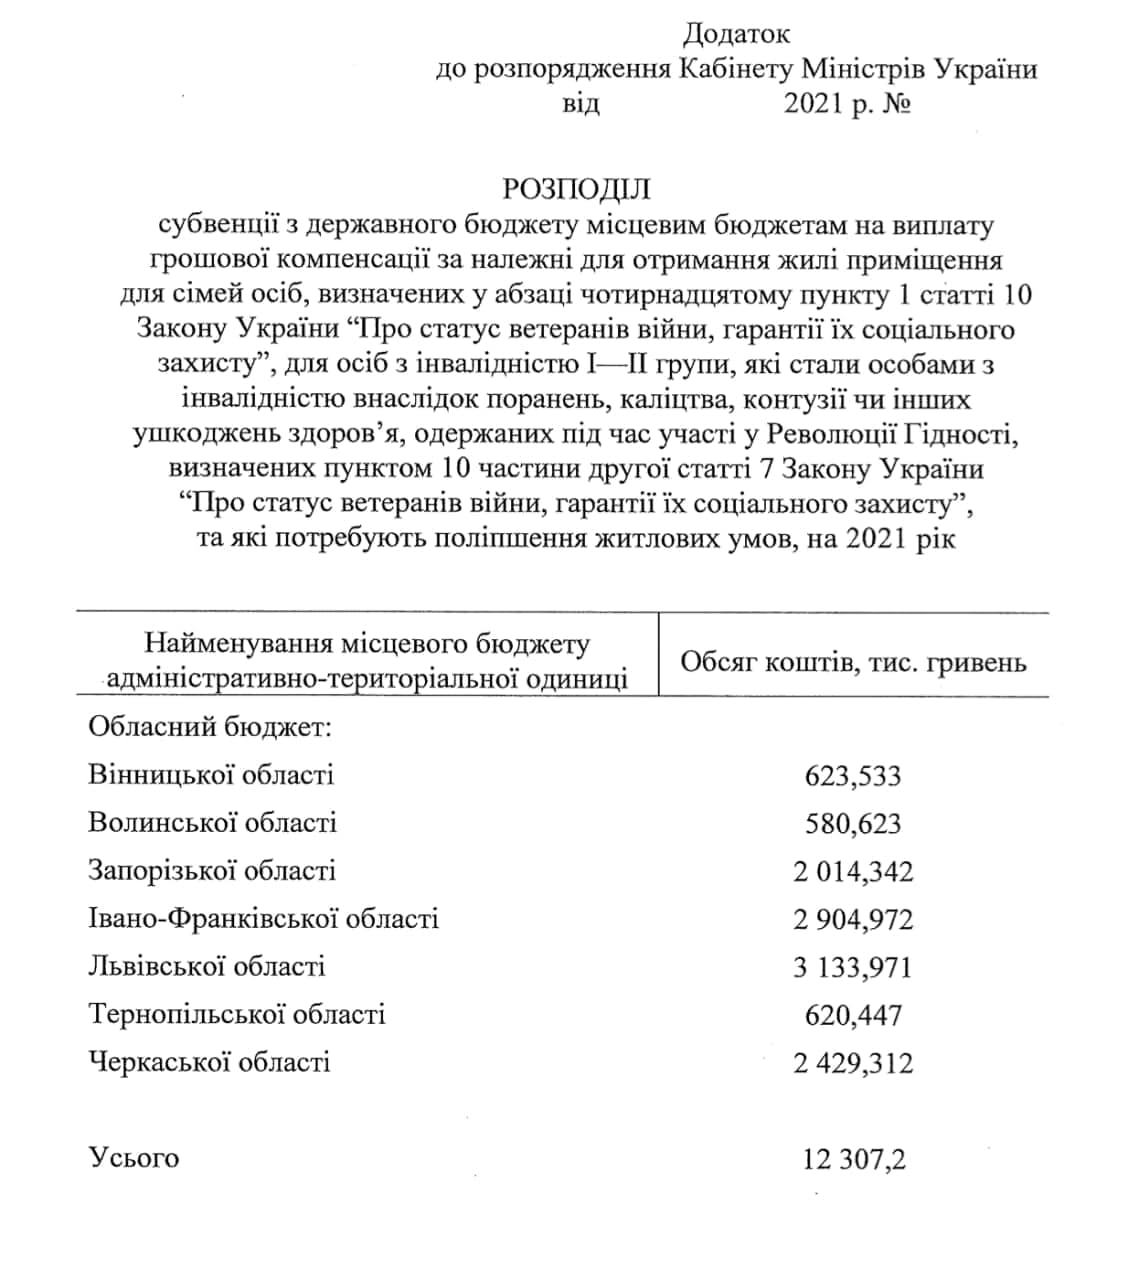 Скриншот документа о субвенциях. Фото: Гончаренко